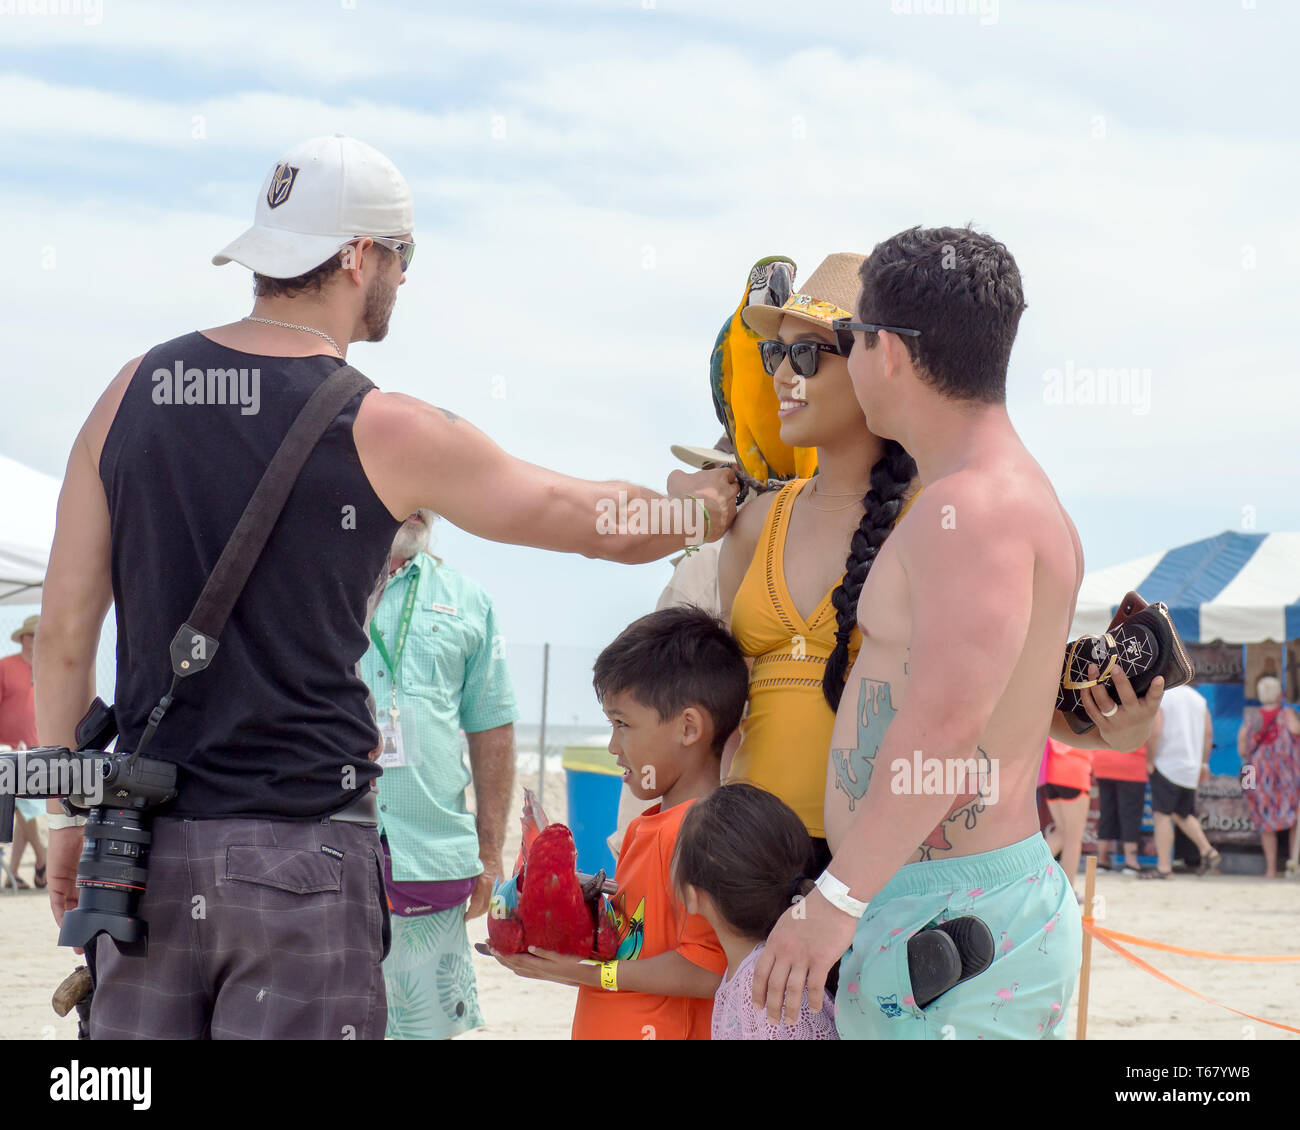 Un photographe met un ara bleu et or sur l'épaule d'une femme avant de prendre une photo au Texas 2019 Sandfest à Port Aransas, Texas USA. Banque D'Images